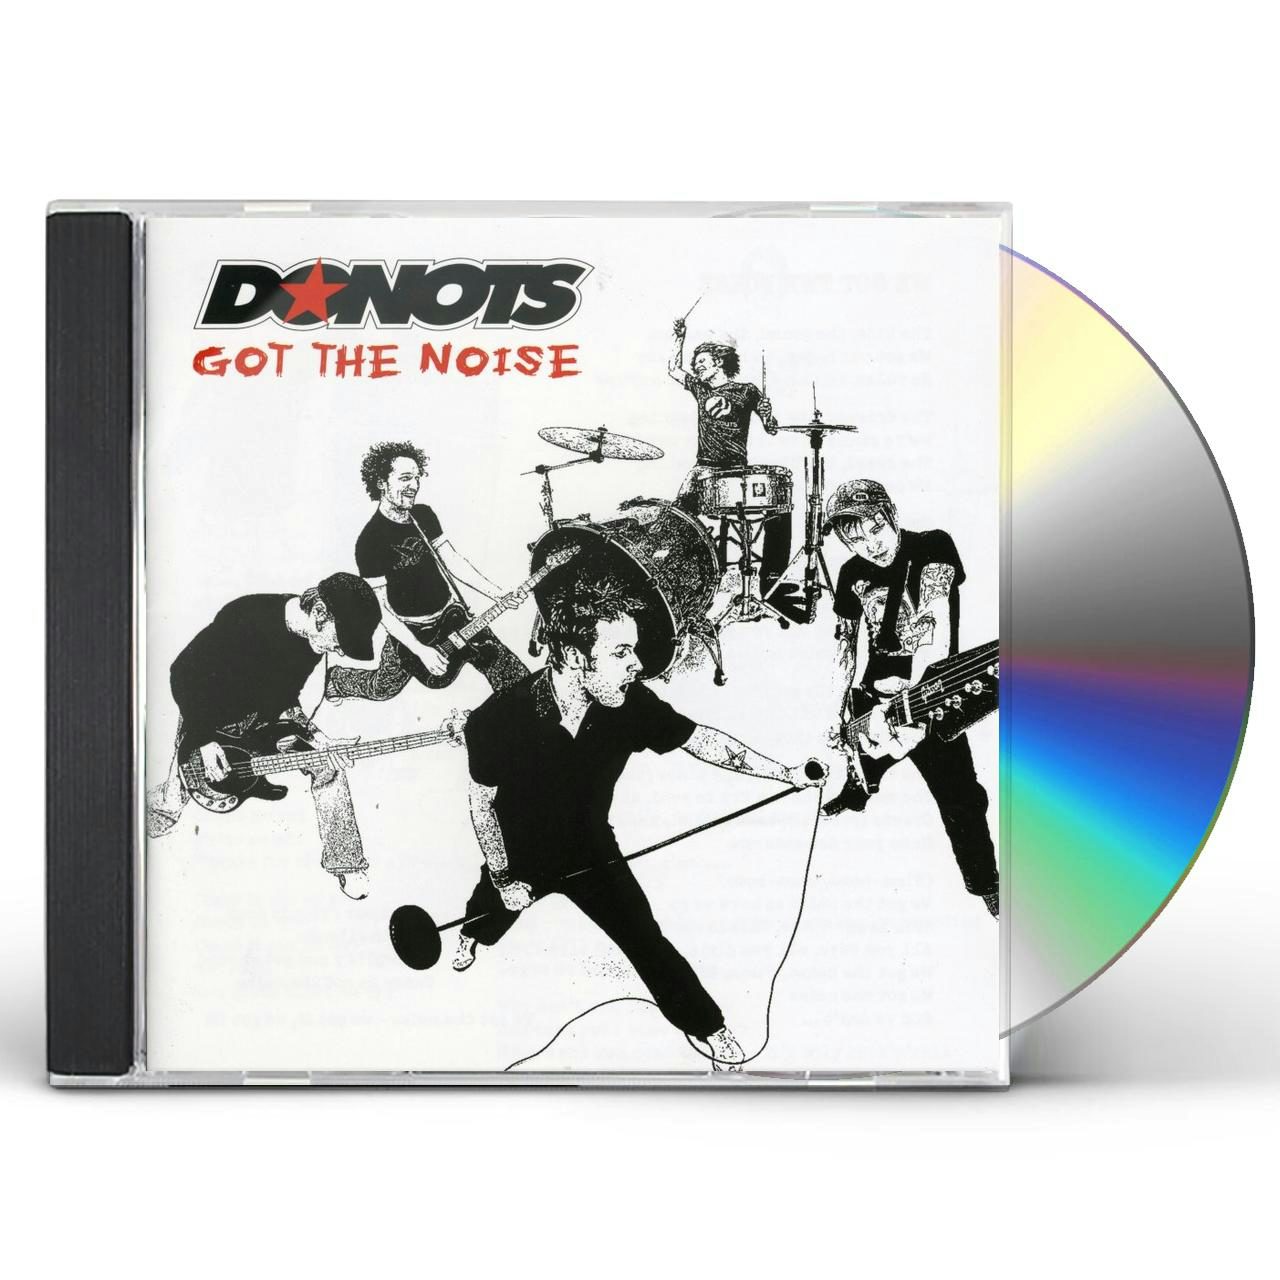 Donots GOT THE NOISE CD